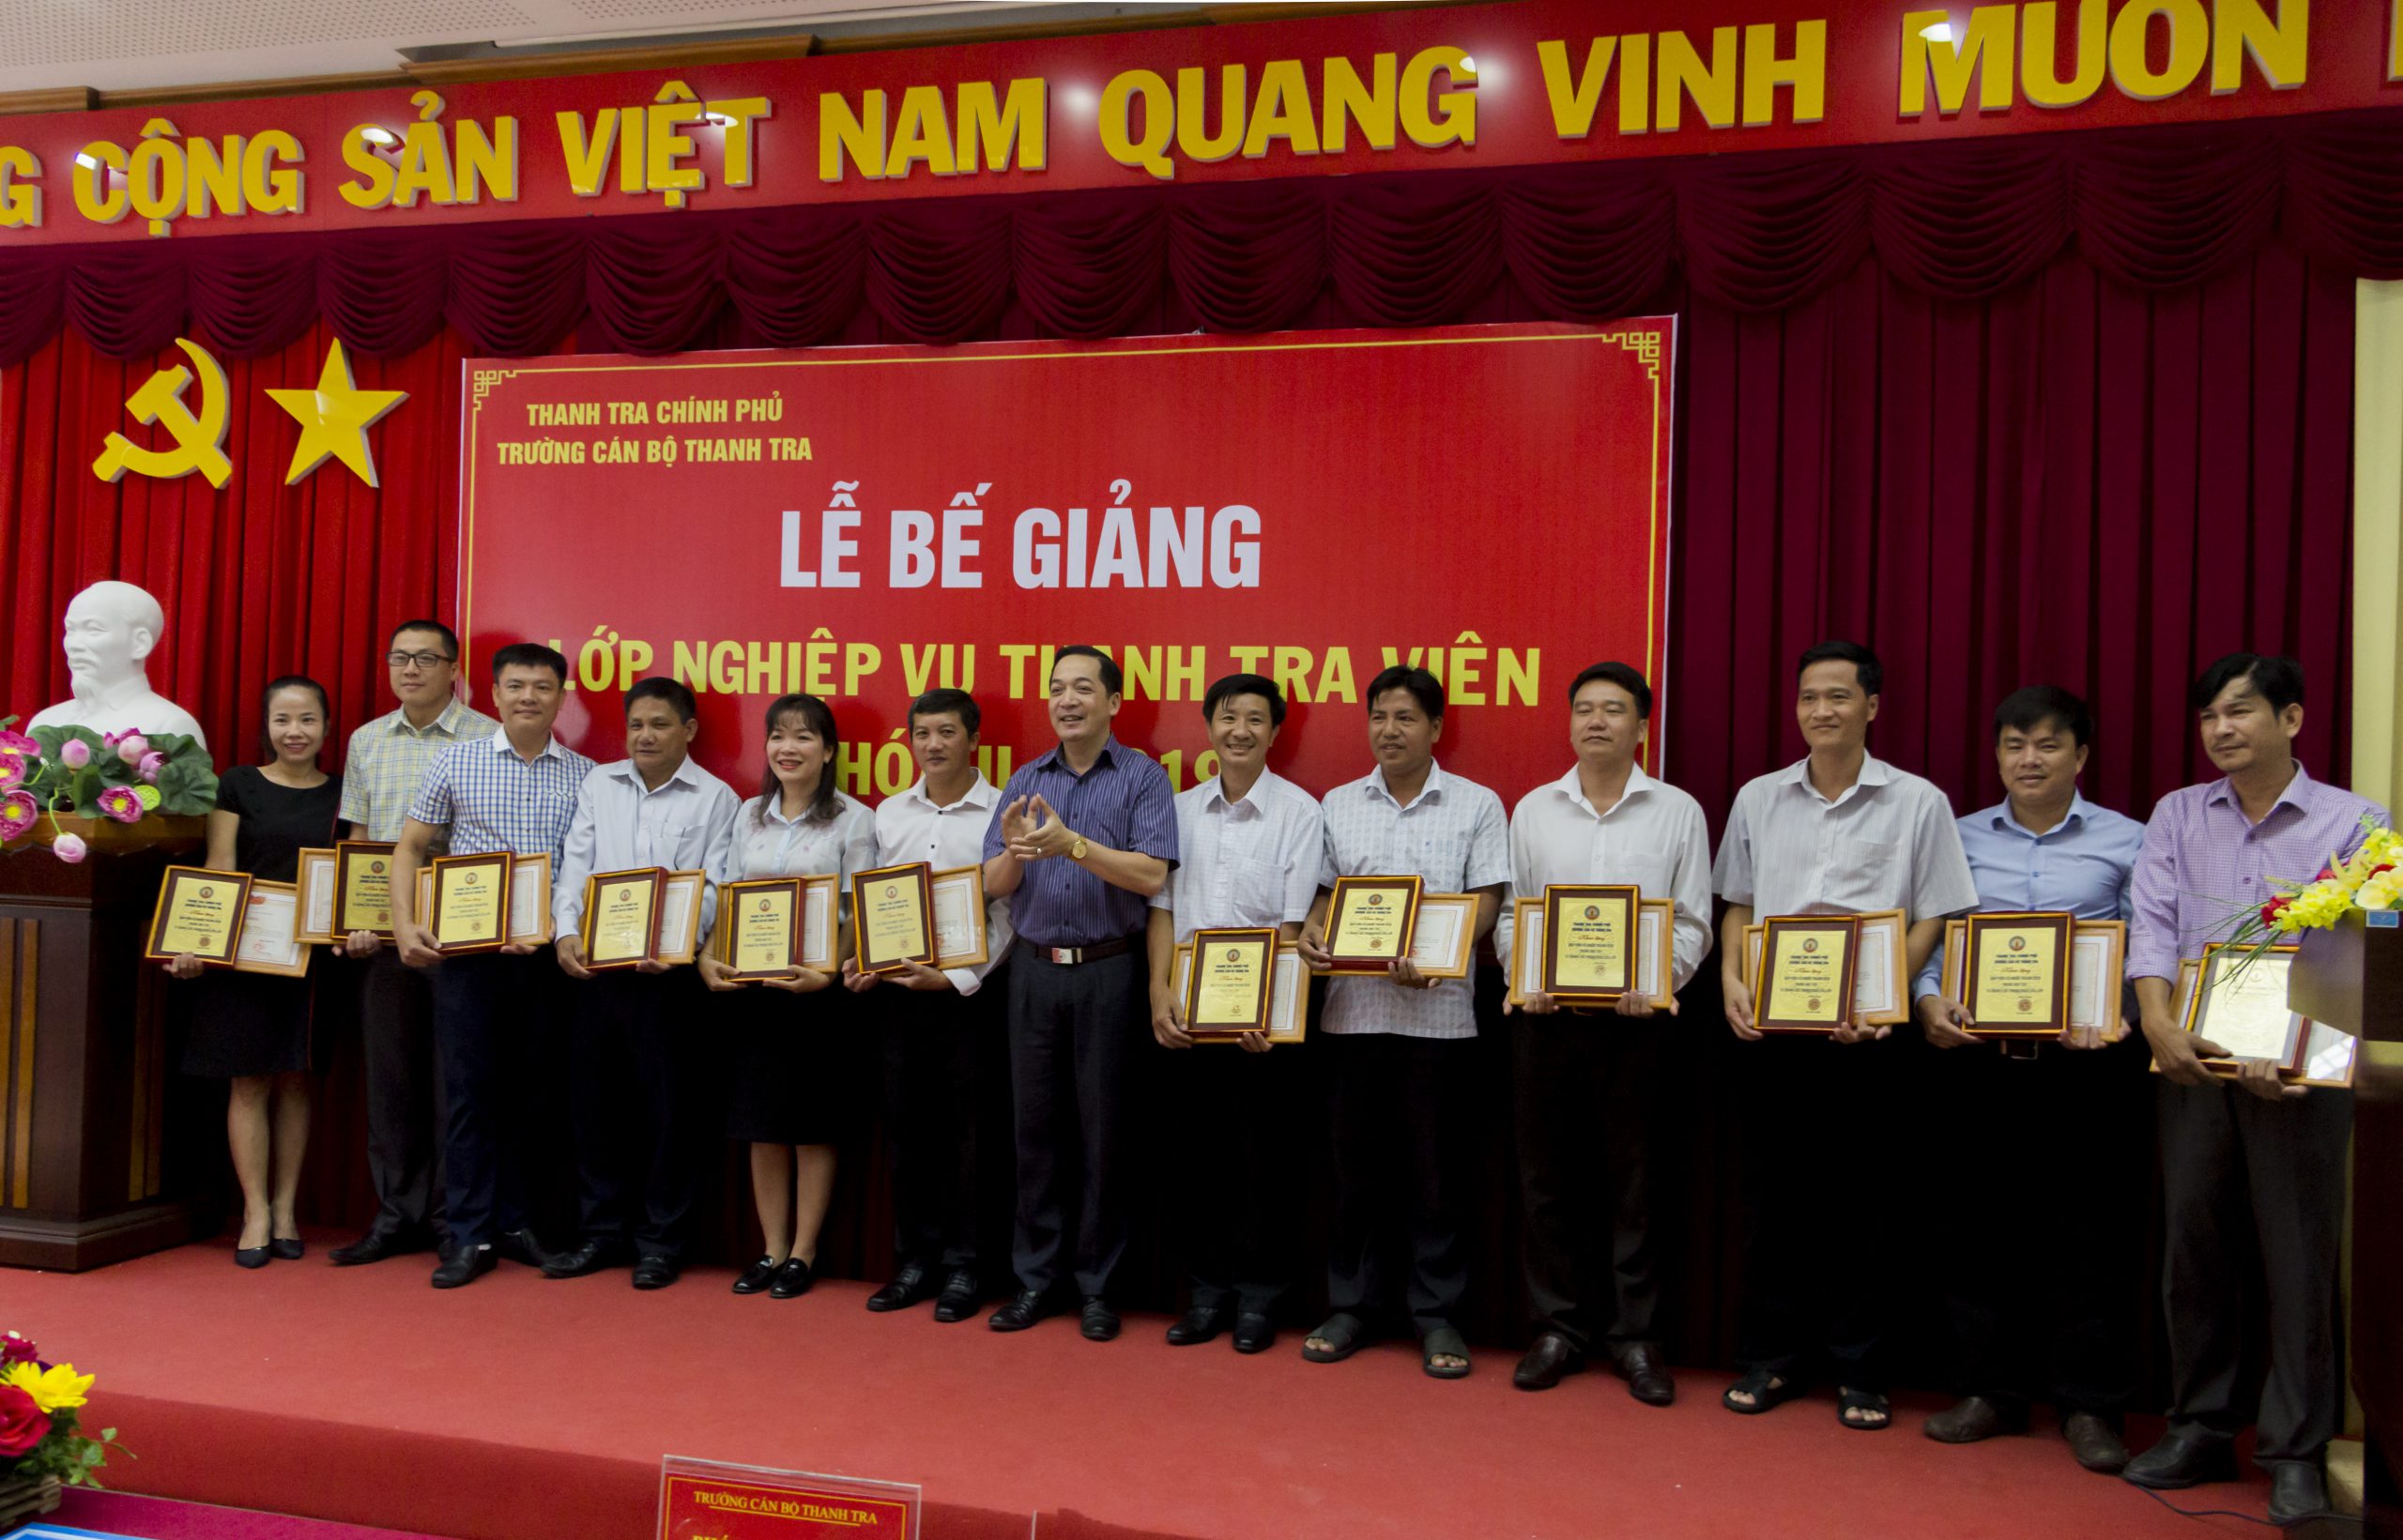 TS Nguyễn Huy Hoàng Phó Hiệu trưởng Trg CBTT trao giấy khen cho HV